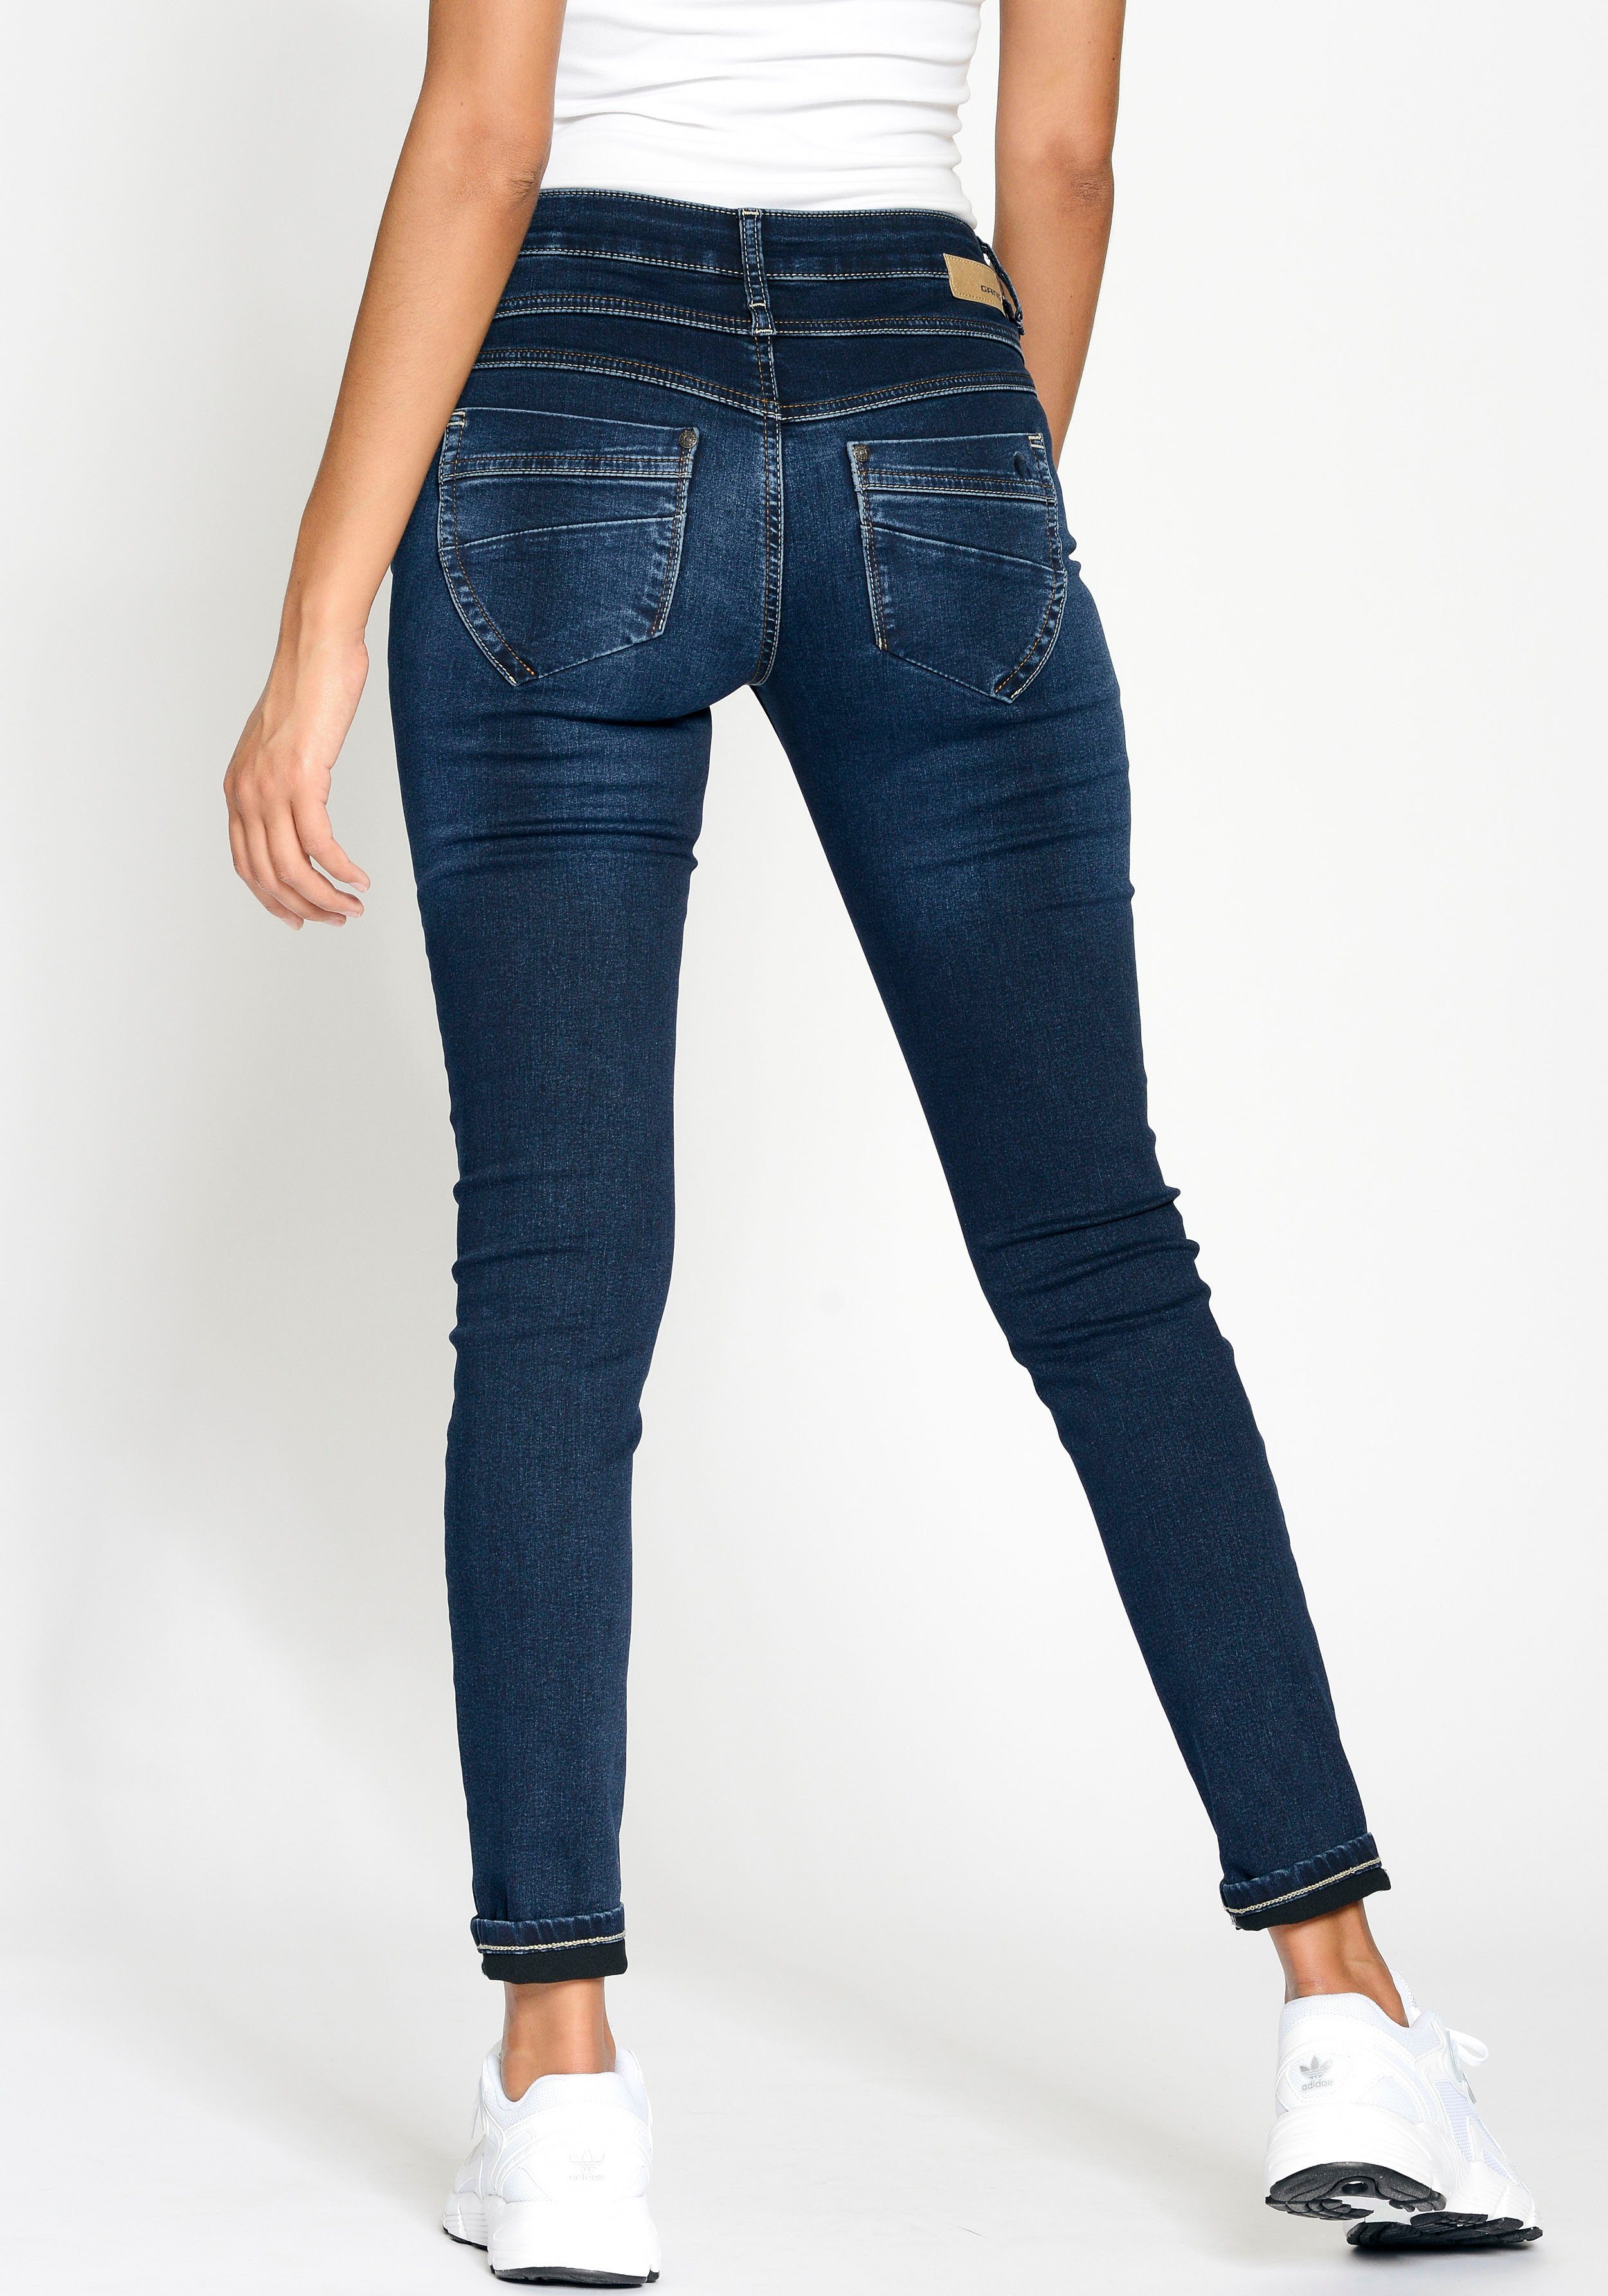 GANG Skinny-fit-Jeans 94MORA mit vorne blue und Passe deep dark 3-Knopf-Verschluss